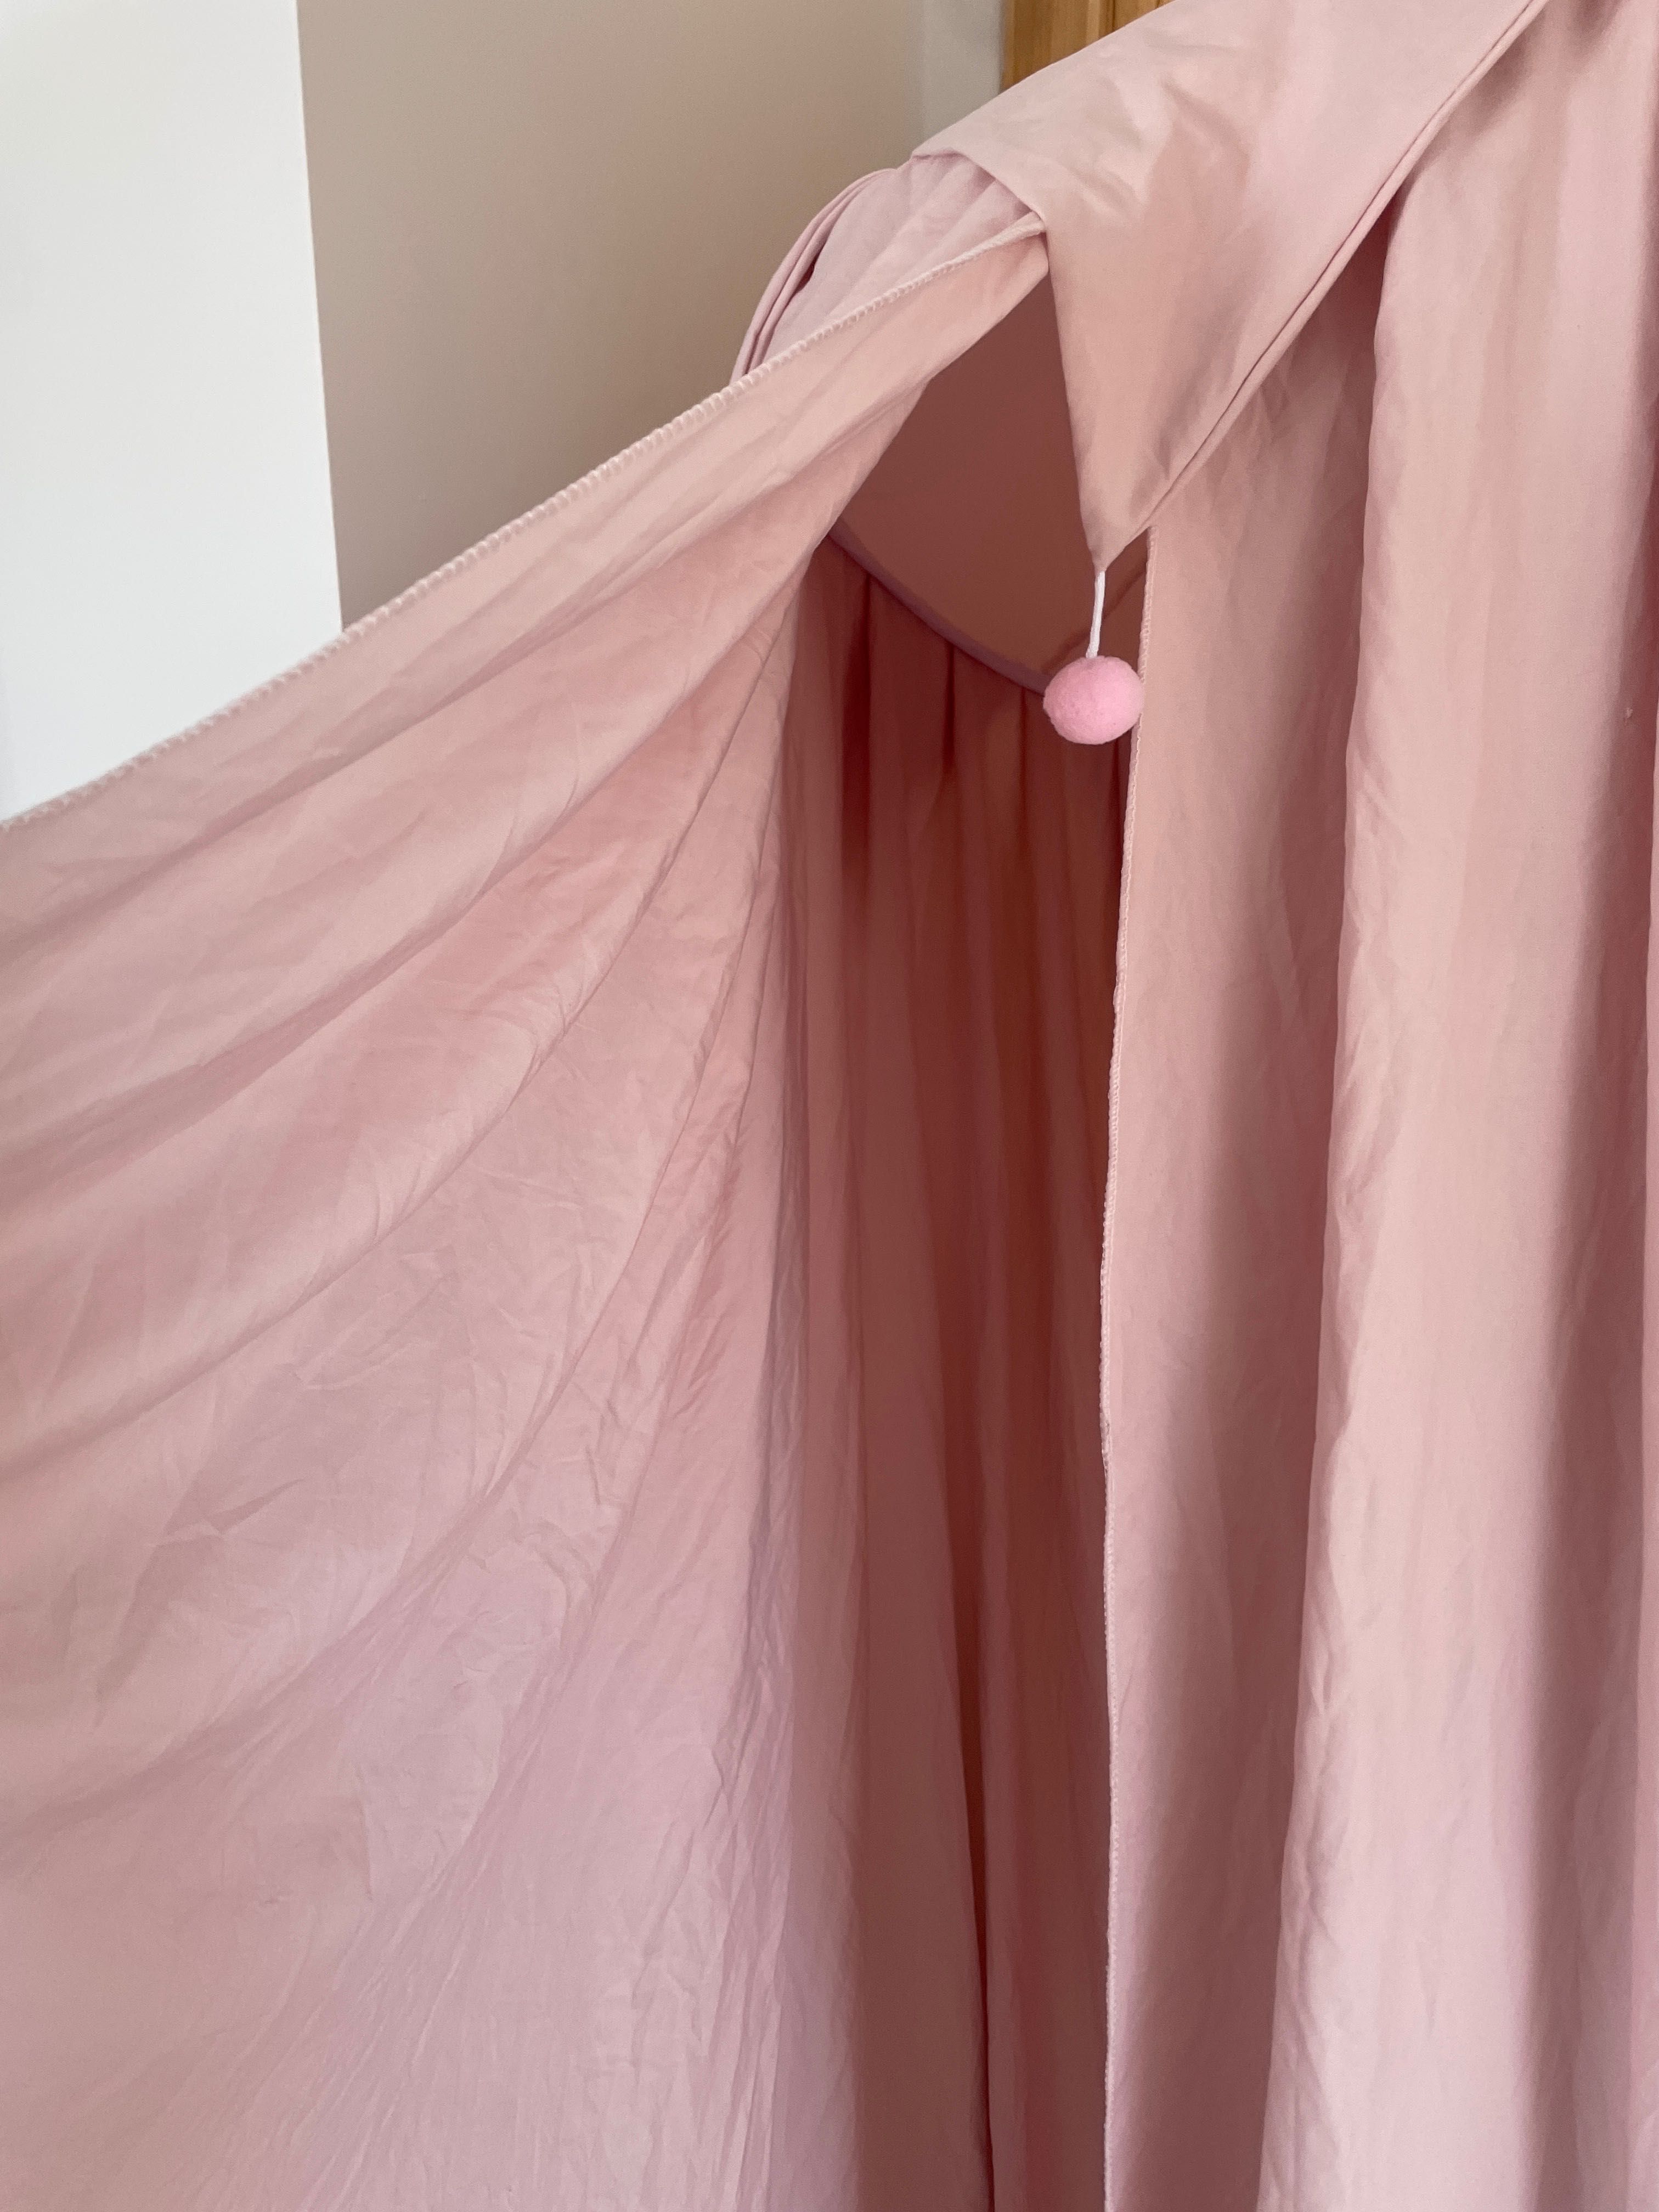 Piękny różowy baldachim nad łóżeczko lub jako namiot